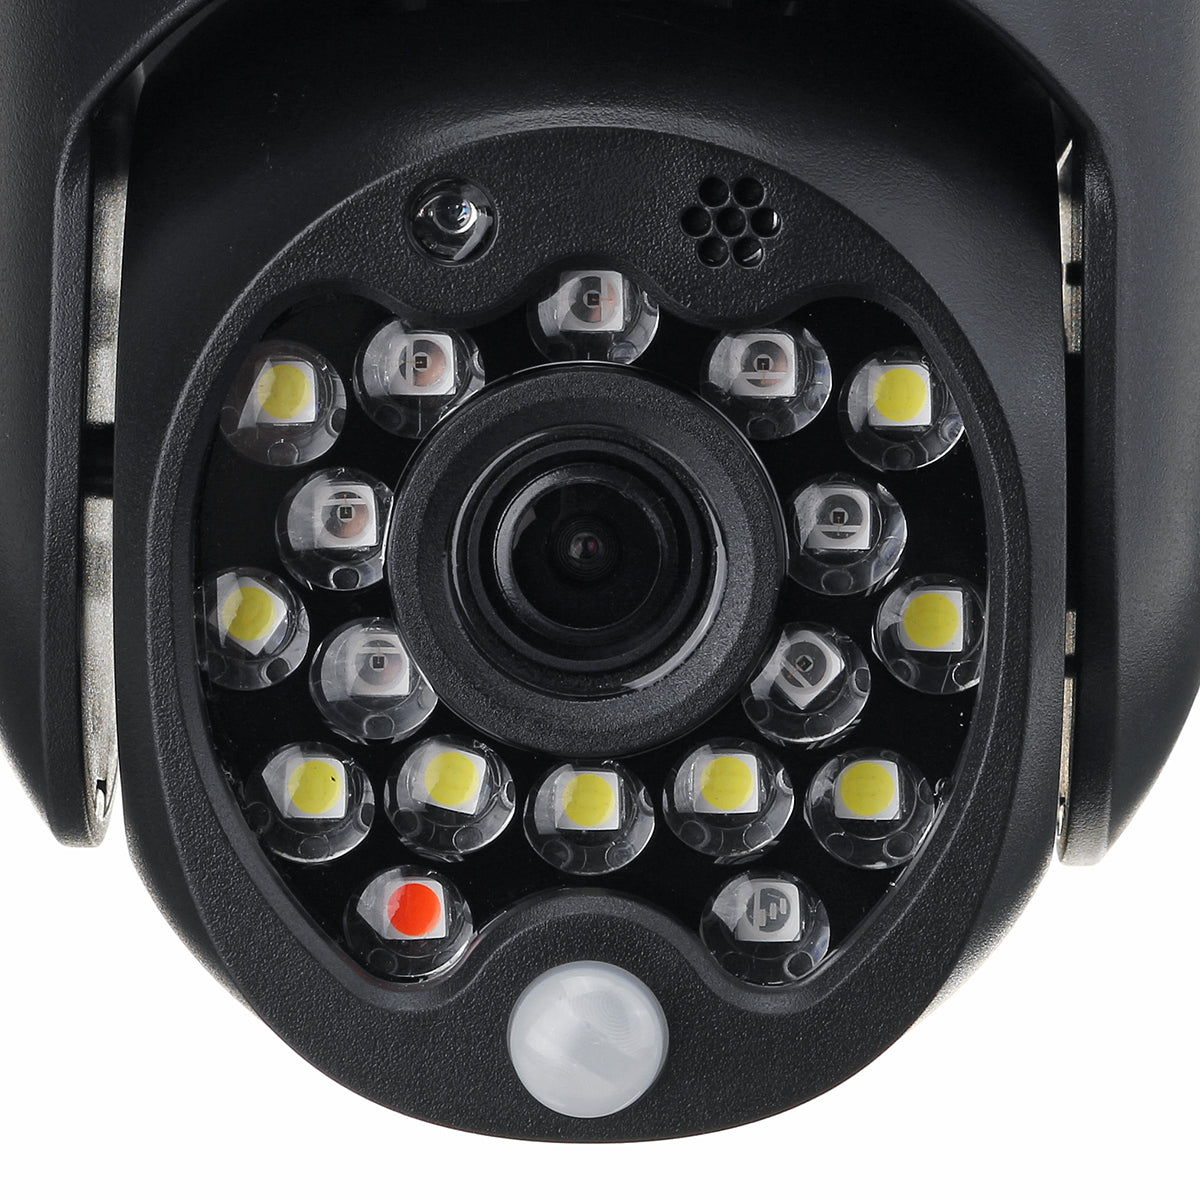 1080P HD Outdoor 2MP IR Camera PTZ IP Pan Tilt Security Motion Tracking IP Camera